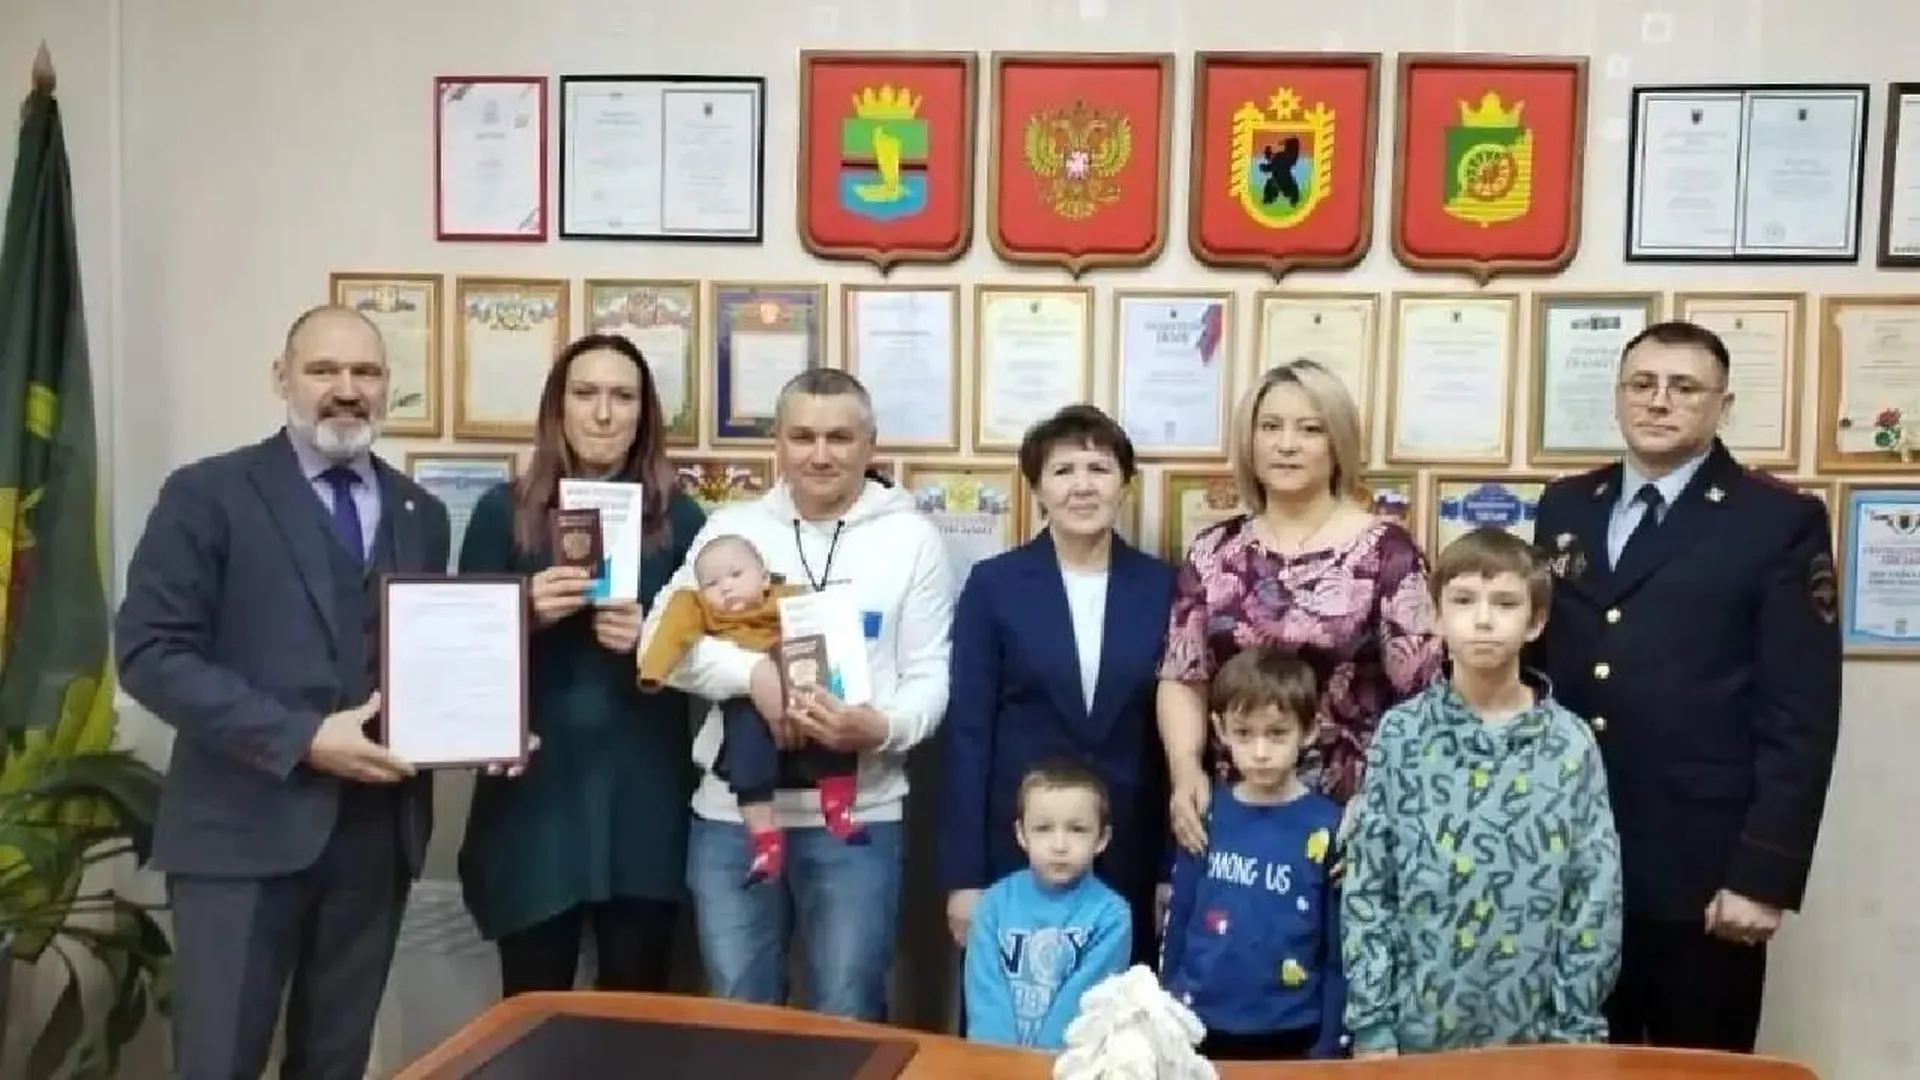 Многодетная семья, которая год назад попросила убежище в Карелии, получила гражданство РФ